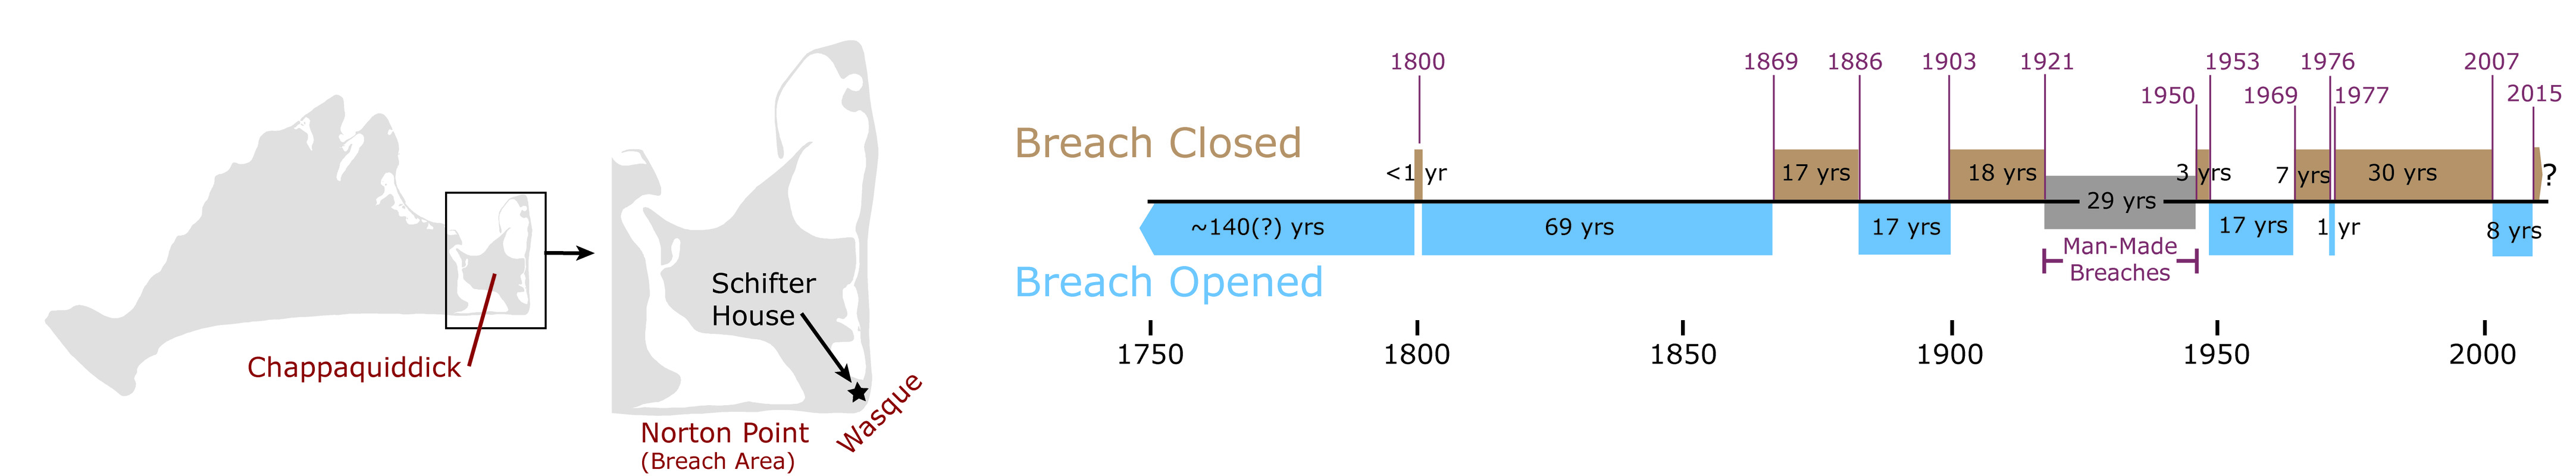 Norton Point Breach Timeline